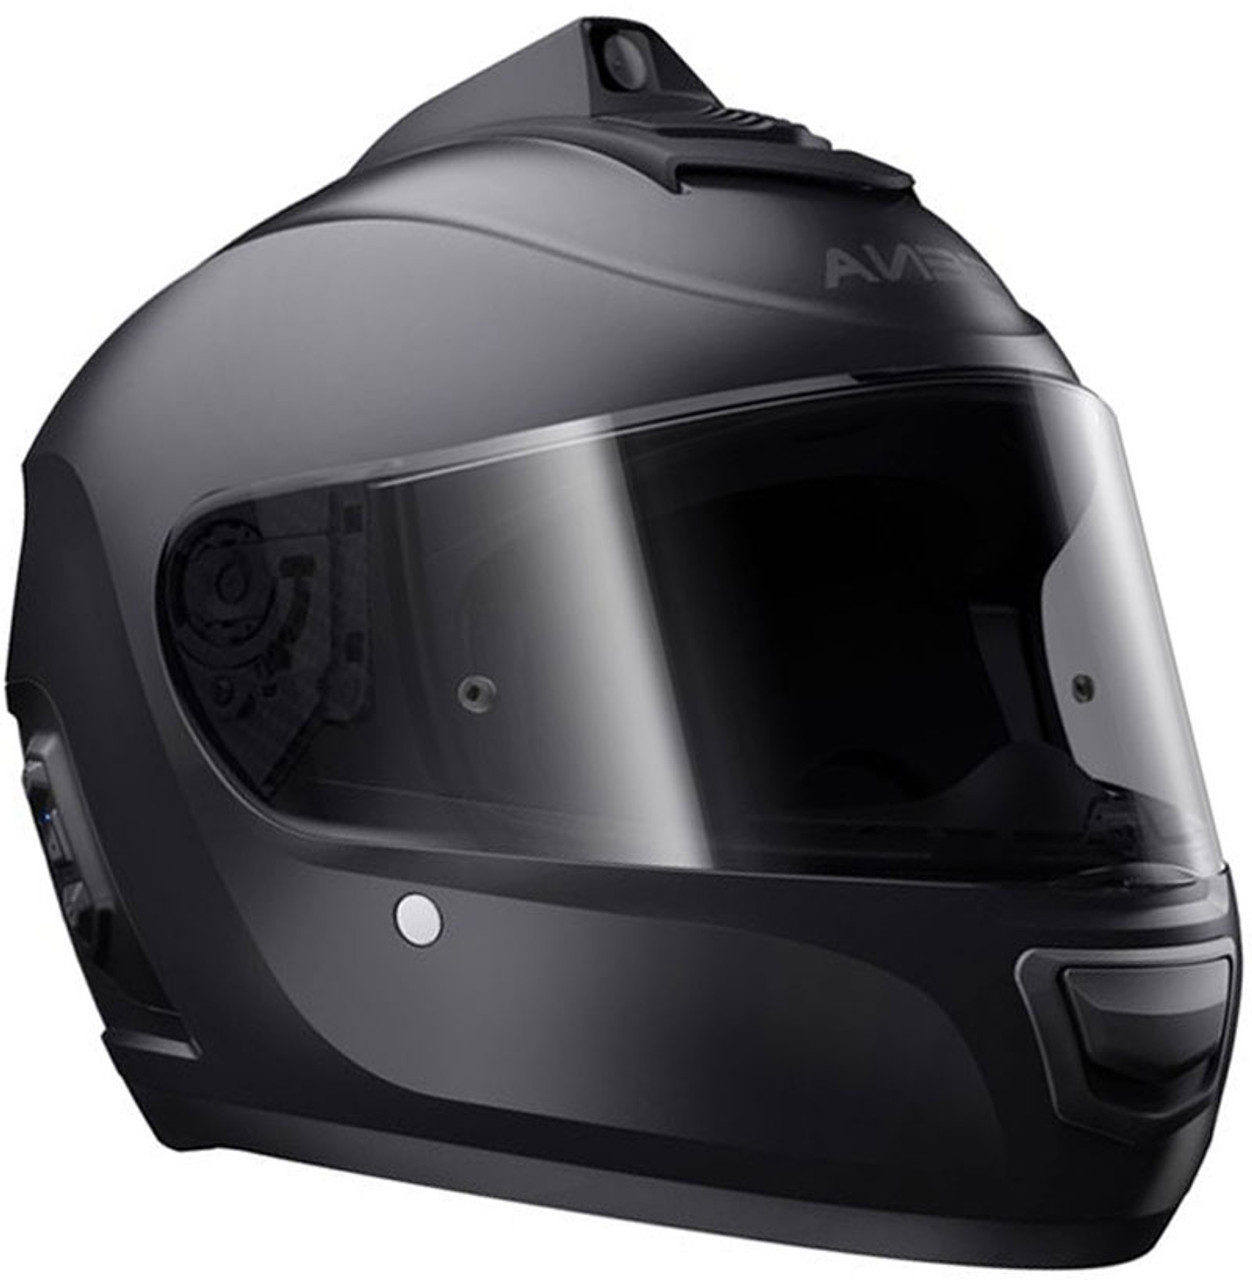 Llevar cámara en el casco de moto: ¿es legal?